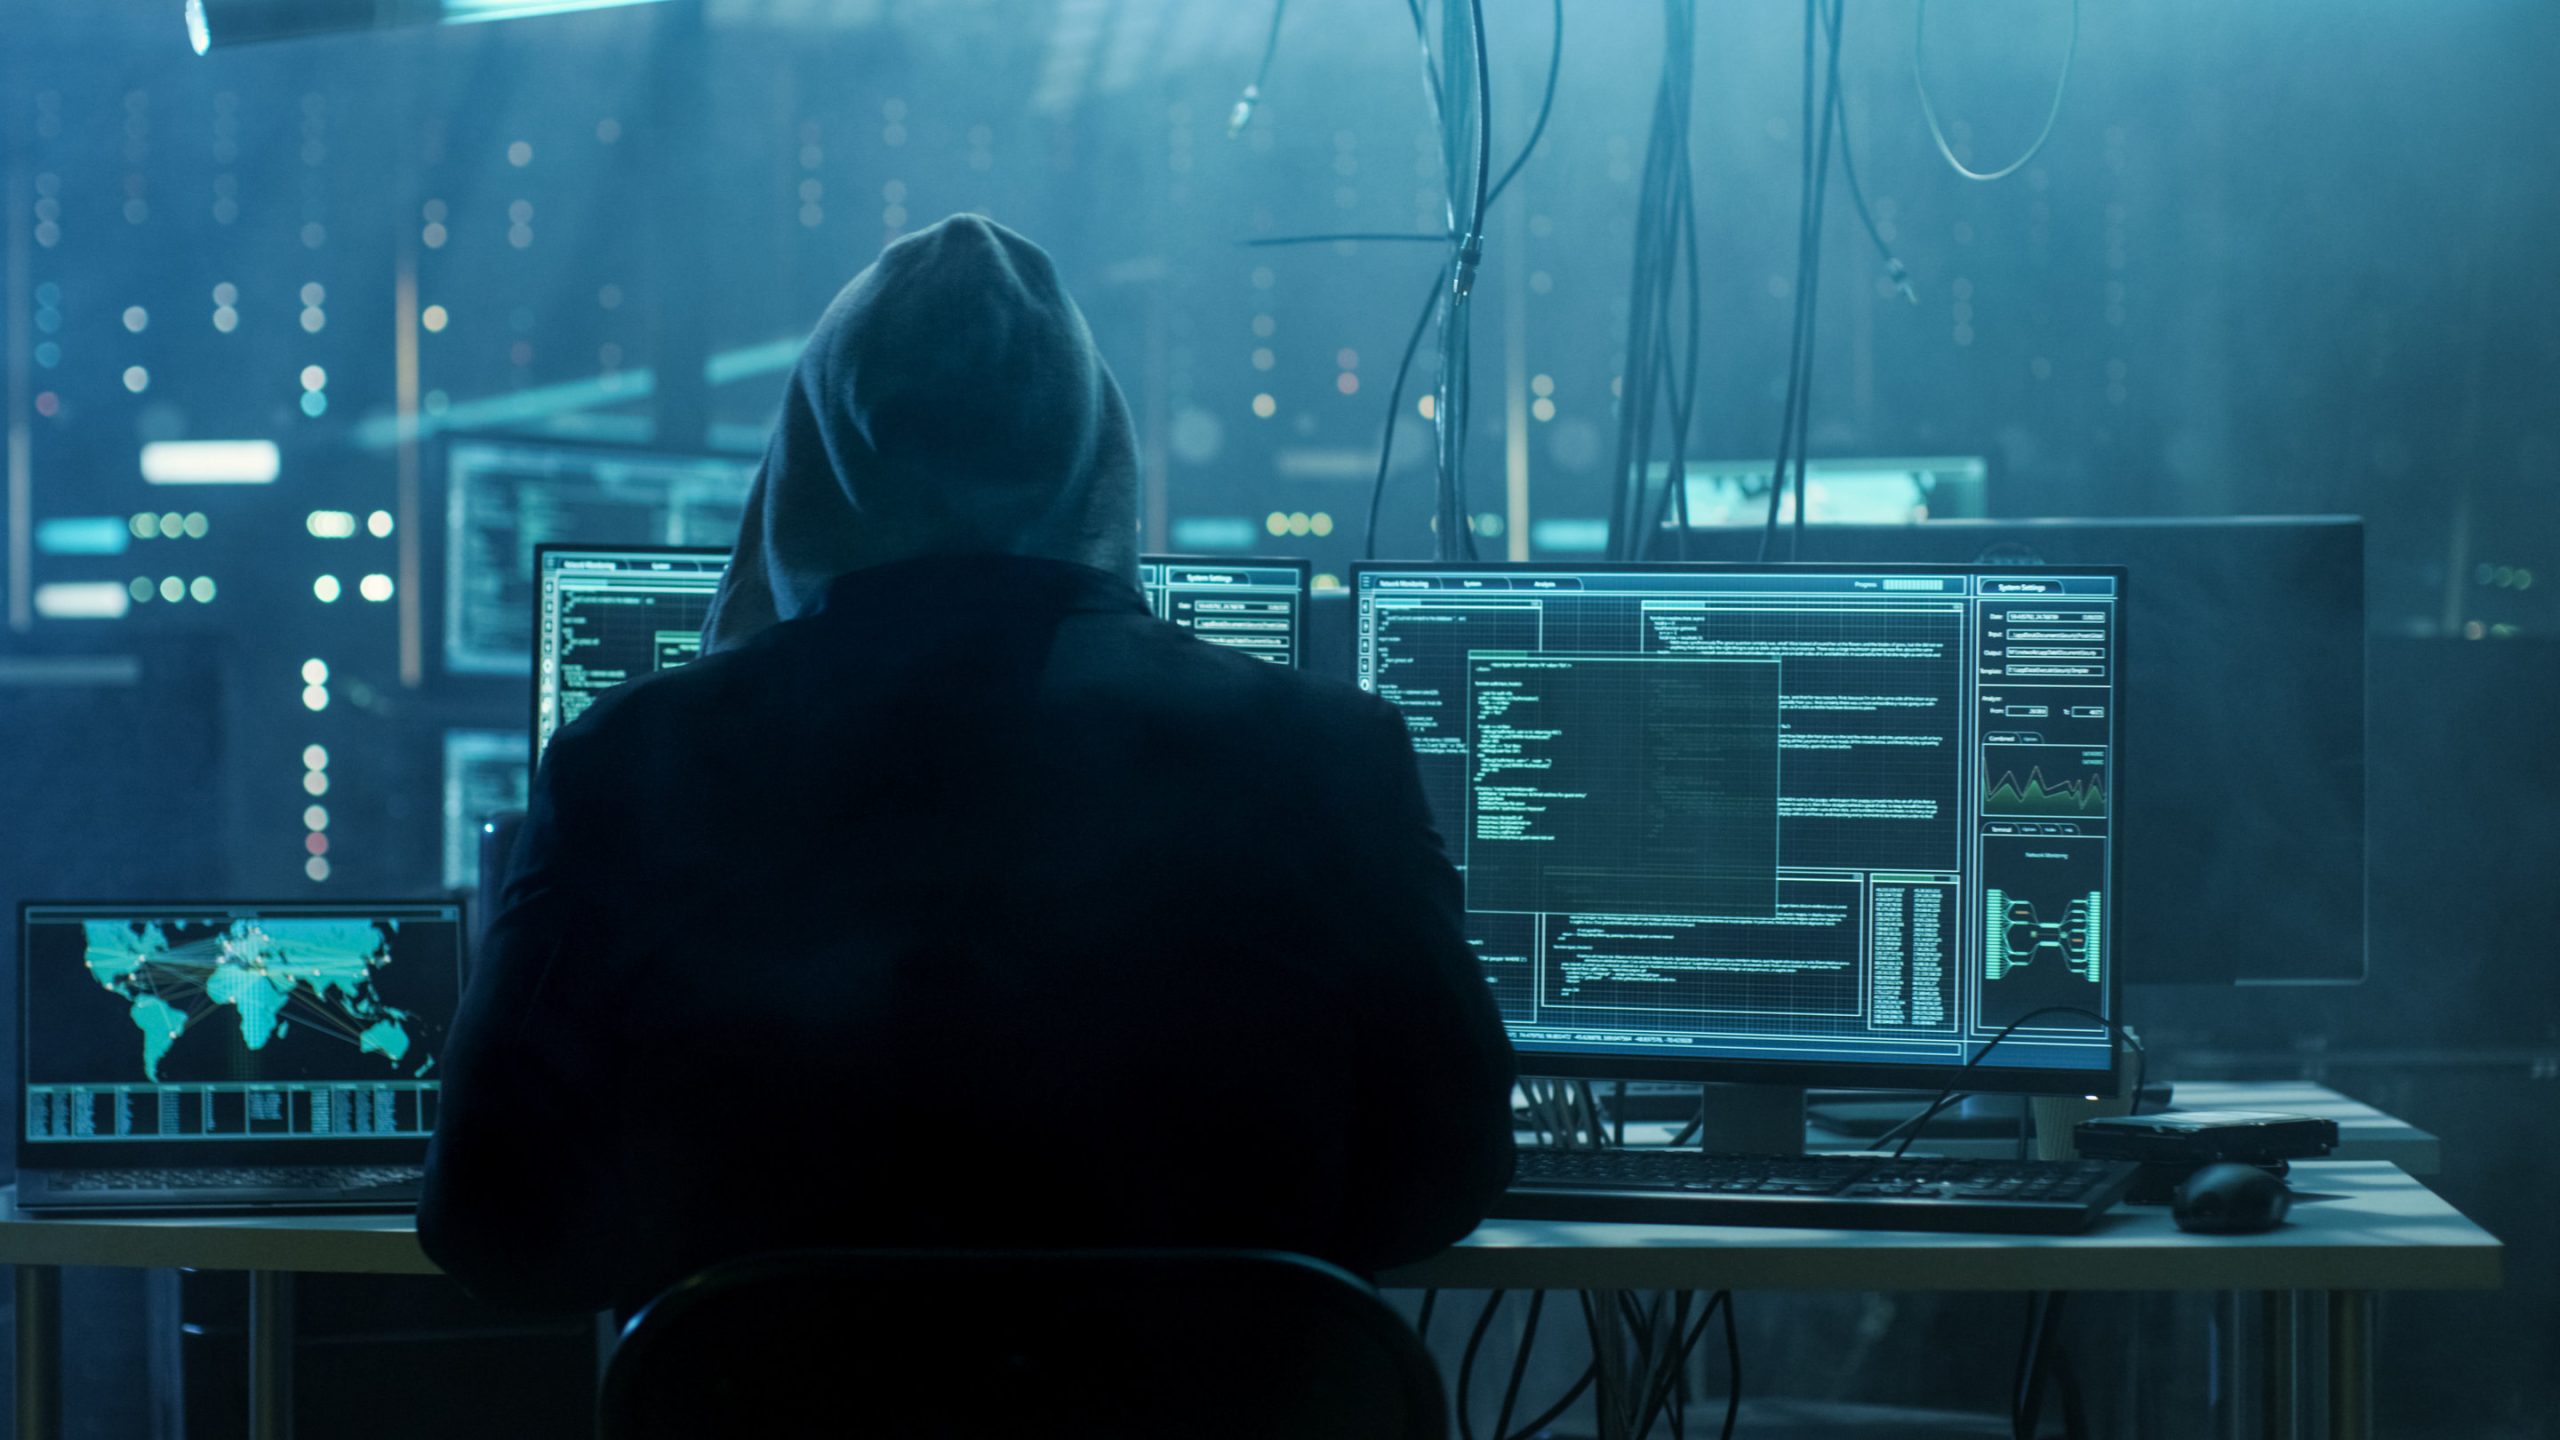 Μανώλης Σφακιανάκης: «Προσοχή στους χάκερς – Καμία τράπεζα δεν ζητά κωδικούς από λογαριασμούς και email»